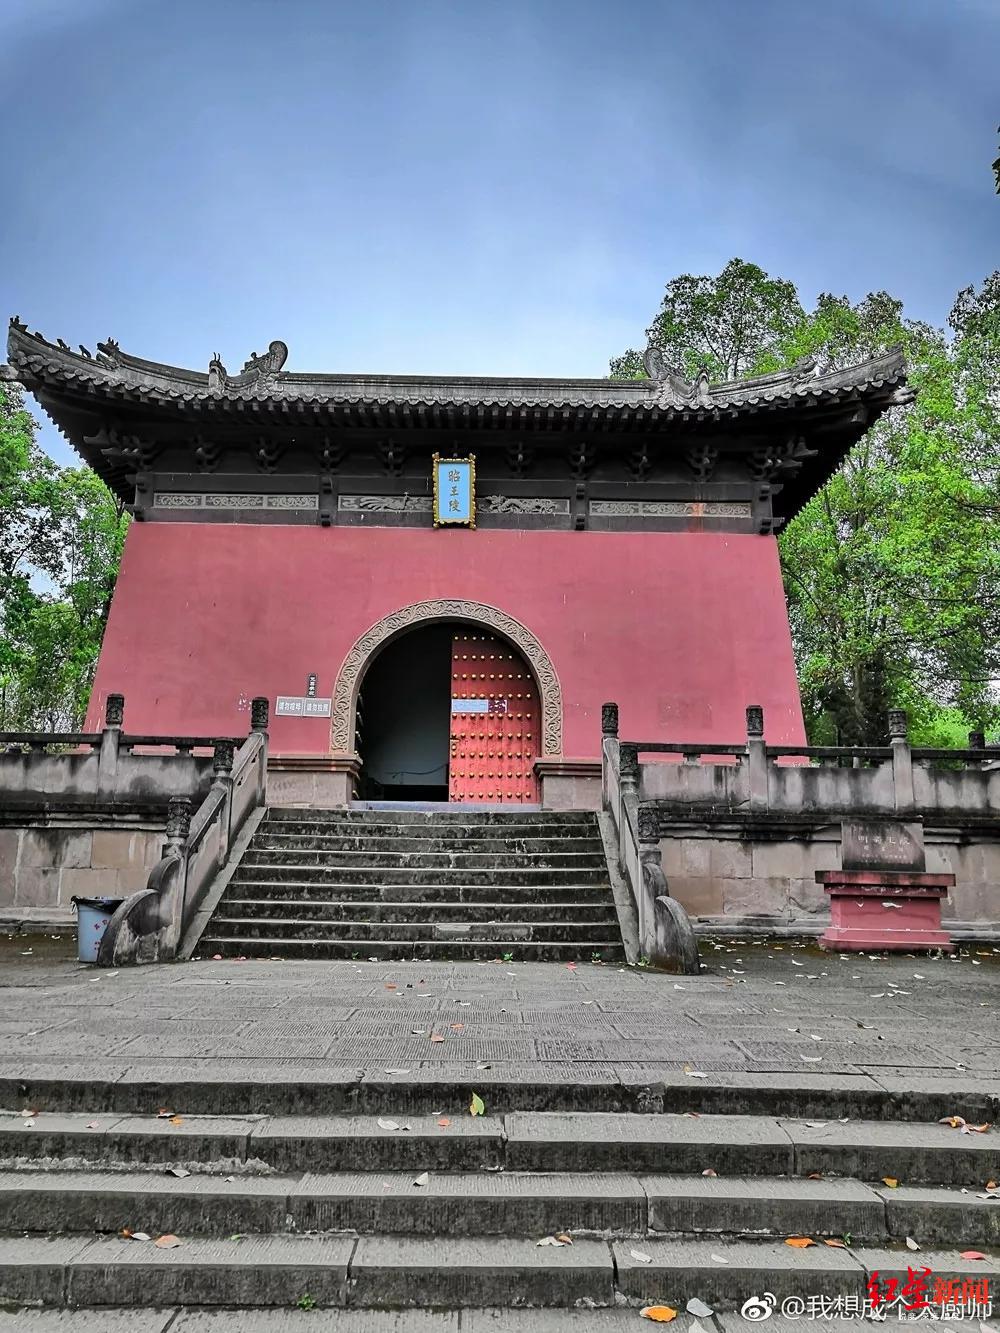 坐落于凤凰山下,青龙湖畔山林中的明蜀王陵,于1988年建成博物馆,是